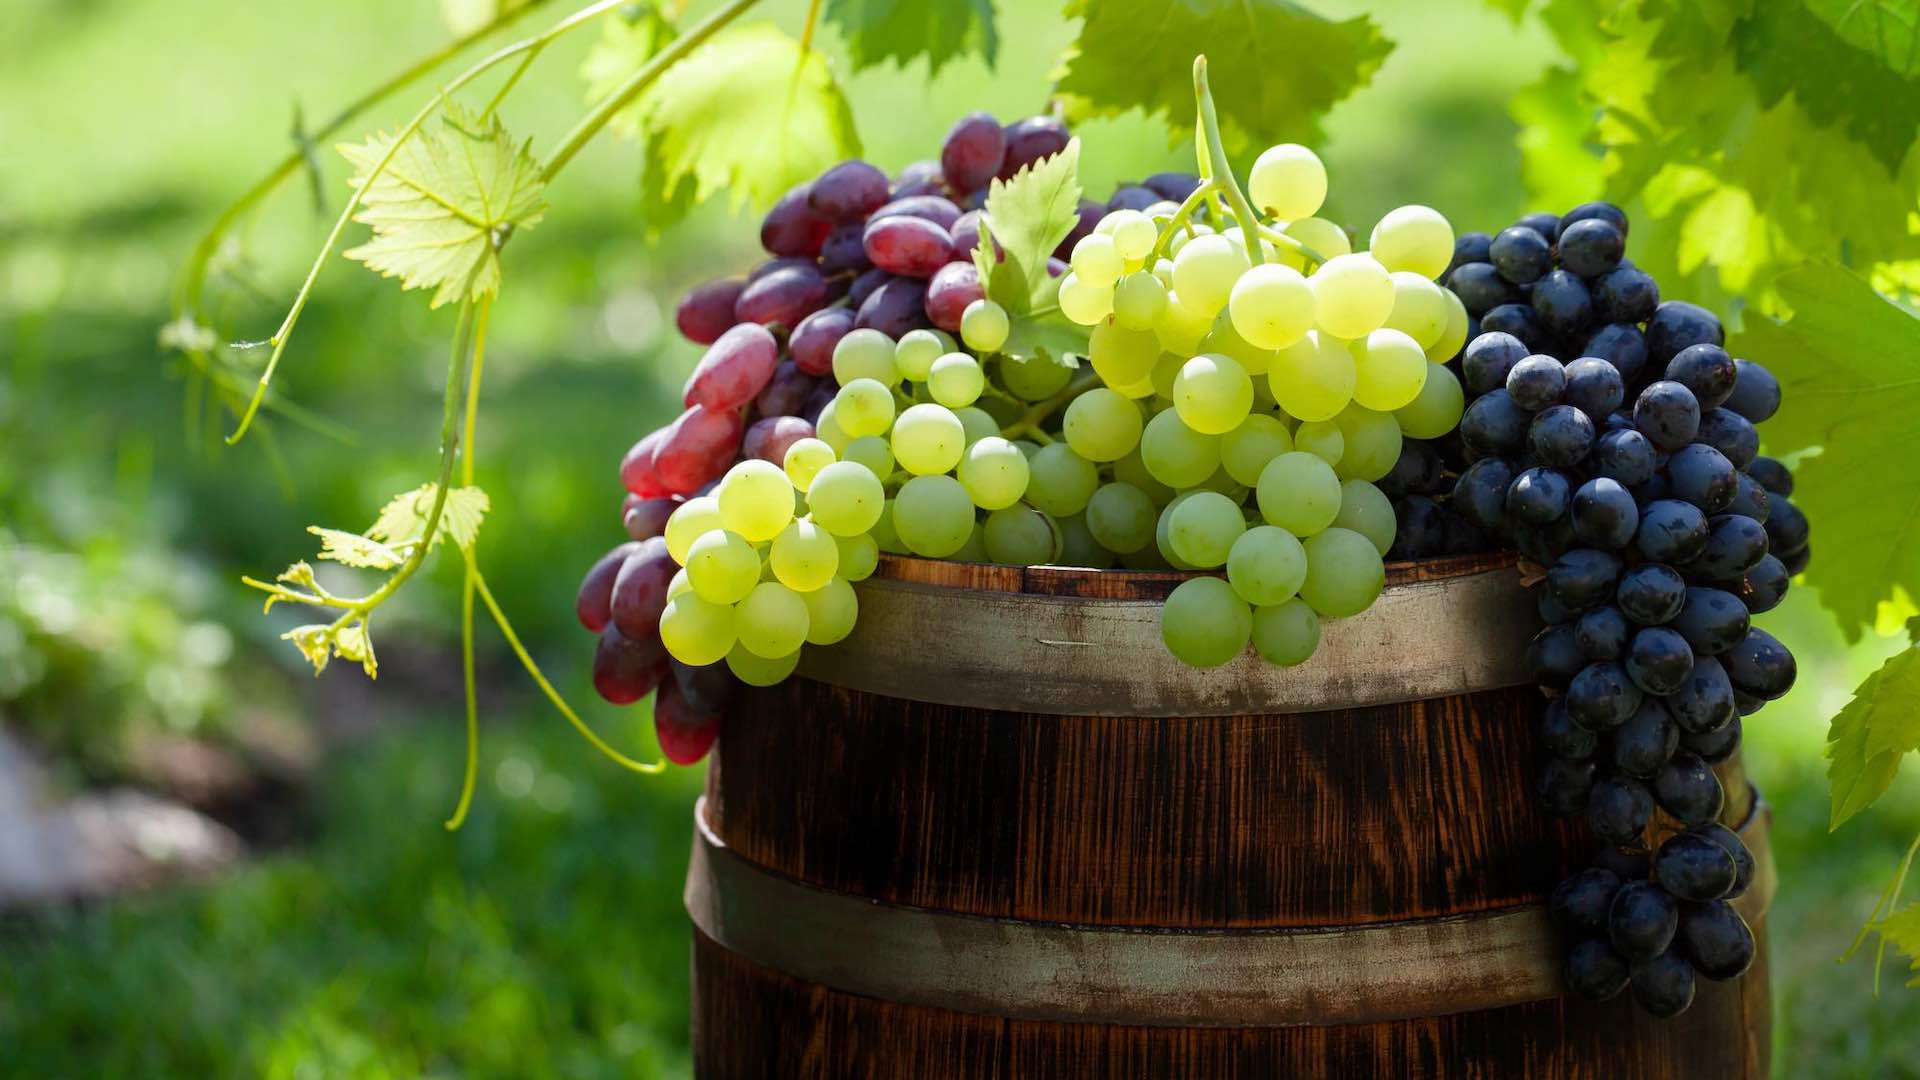 Les raisins améliorent la santé oculaire, dépassant leurs bienfaits antioxydants connus